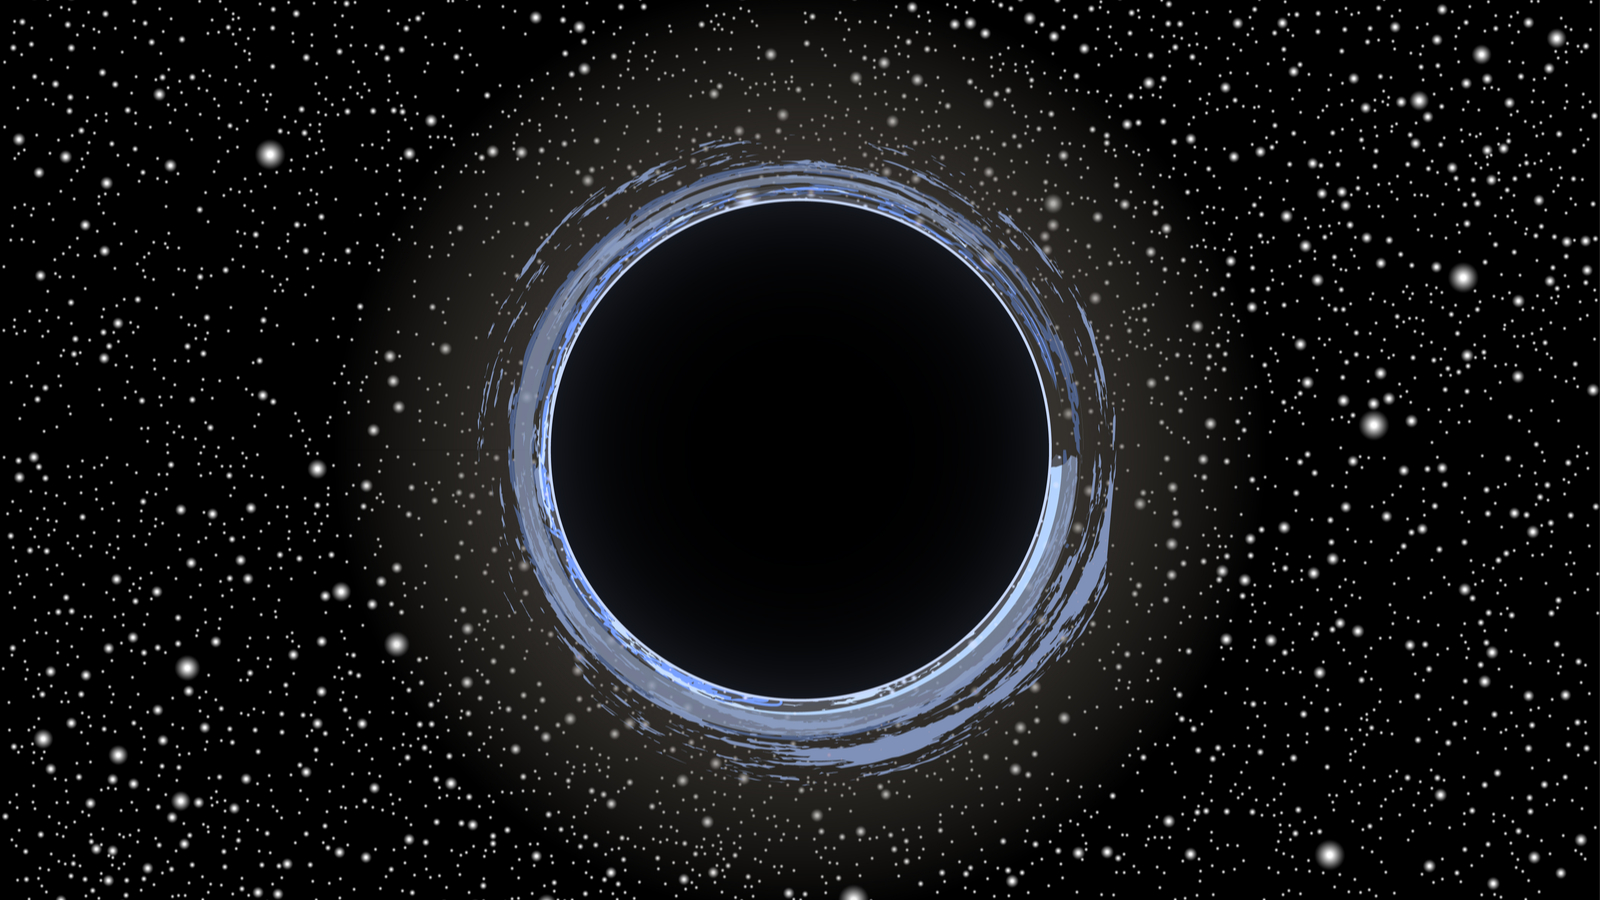 Gaia BH1 est le trou noir le plus proche de la Terre, comment l'a-t-on détecté ?